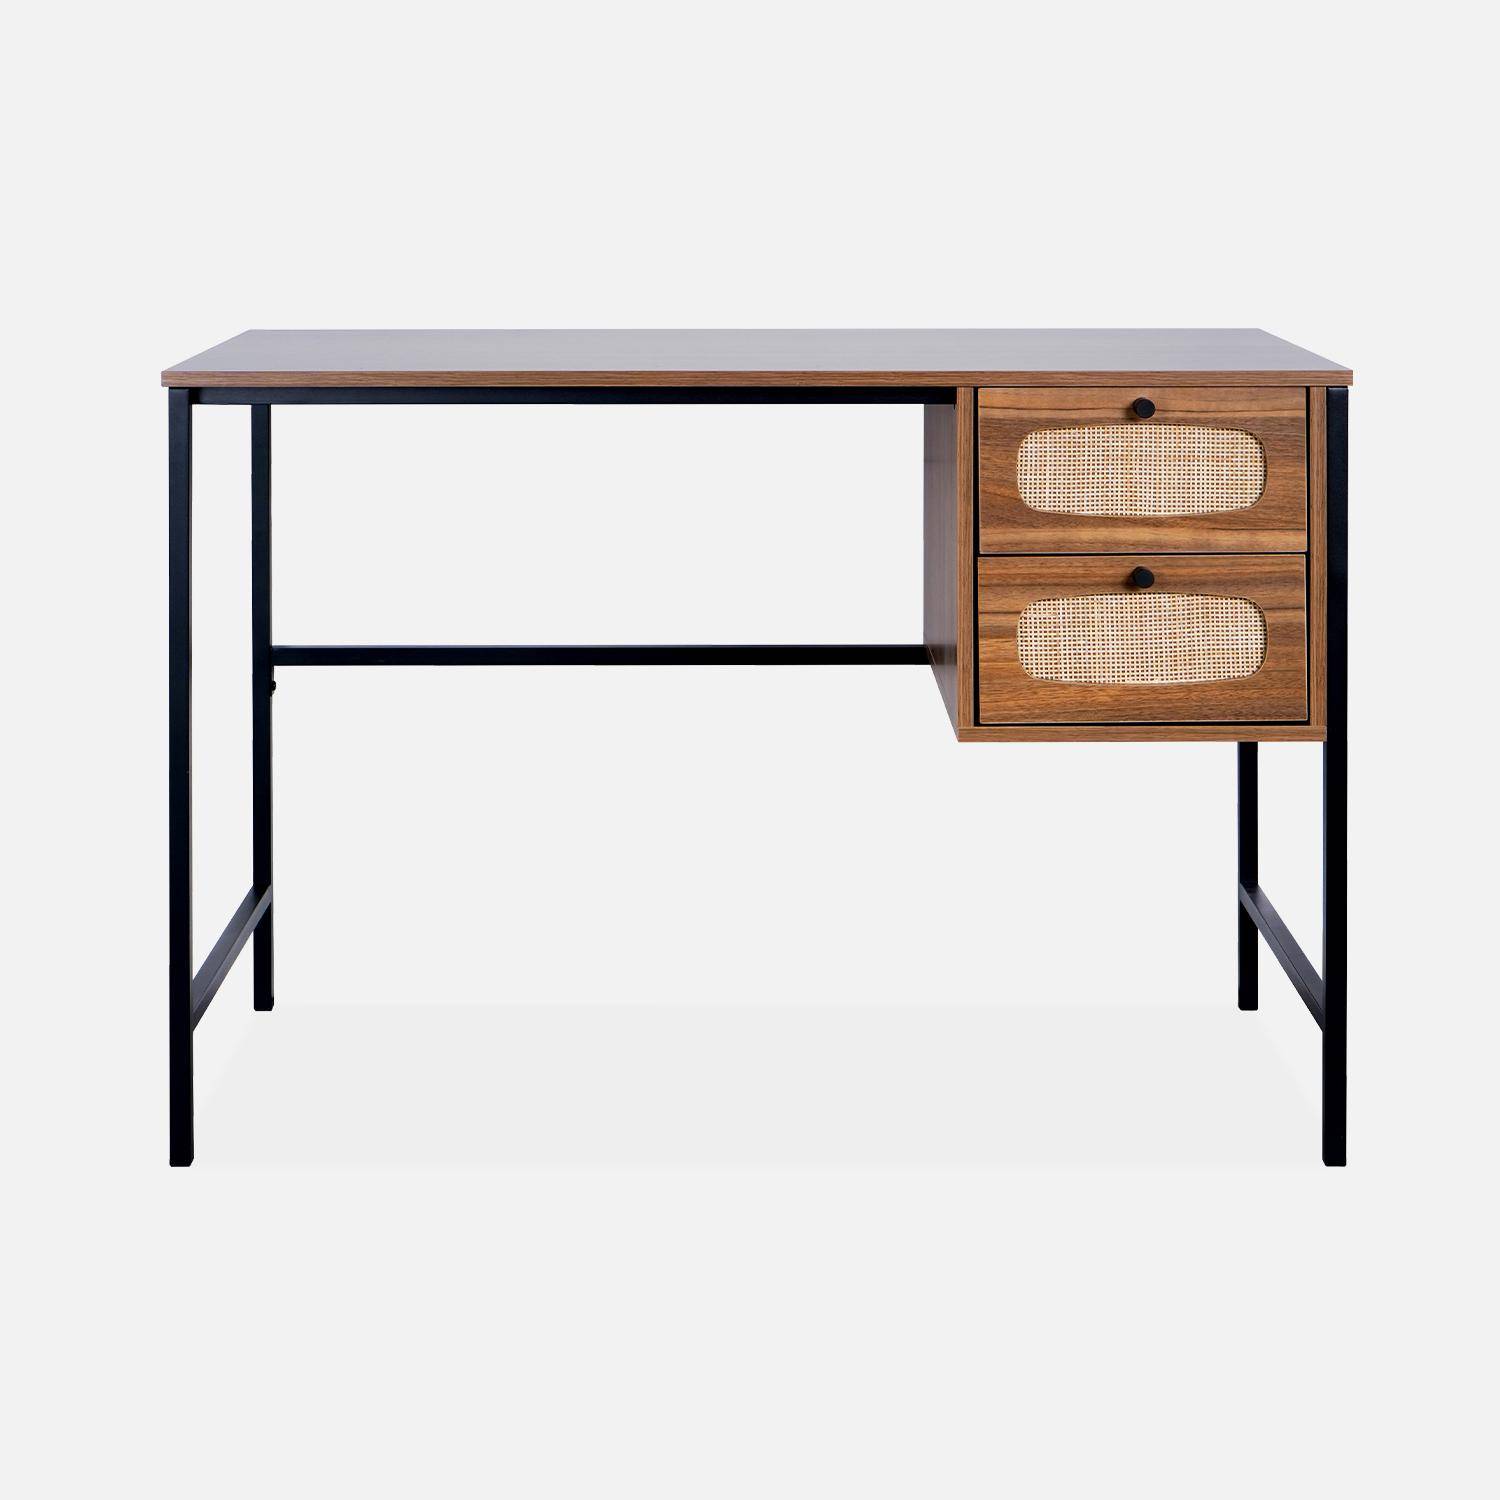 Retro-Schreibtisch mit Holzdekor und Rohrgeflecht, Gestell und Griffen aus schwarzem Metall - Retro,sweeek,Photo5